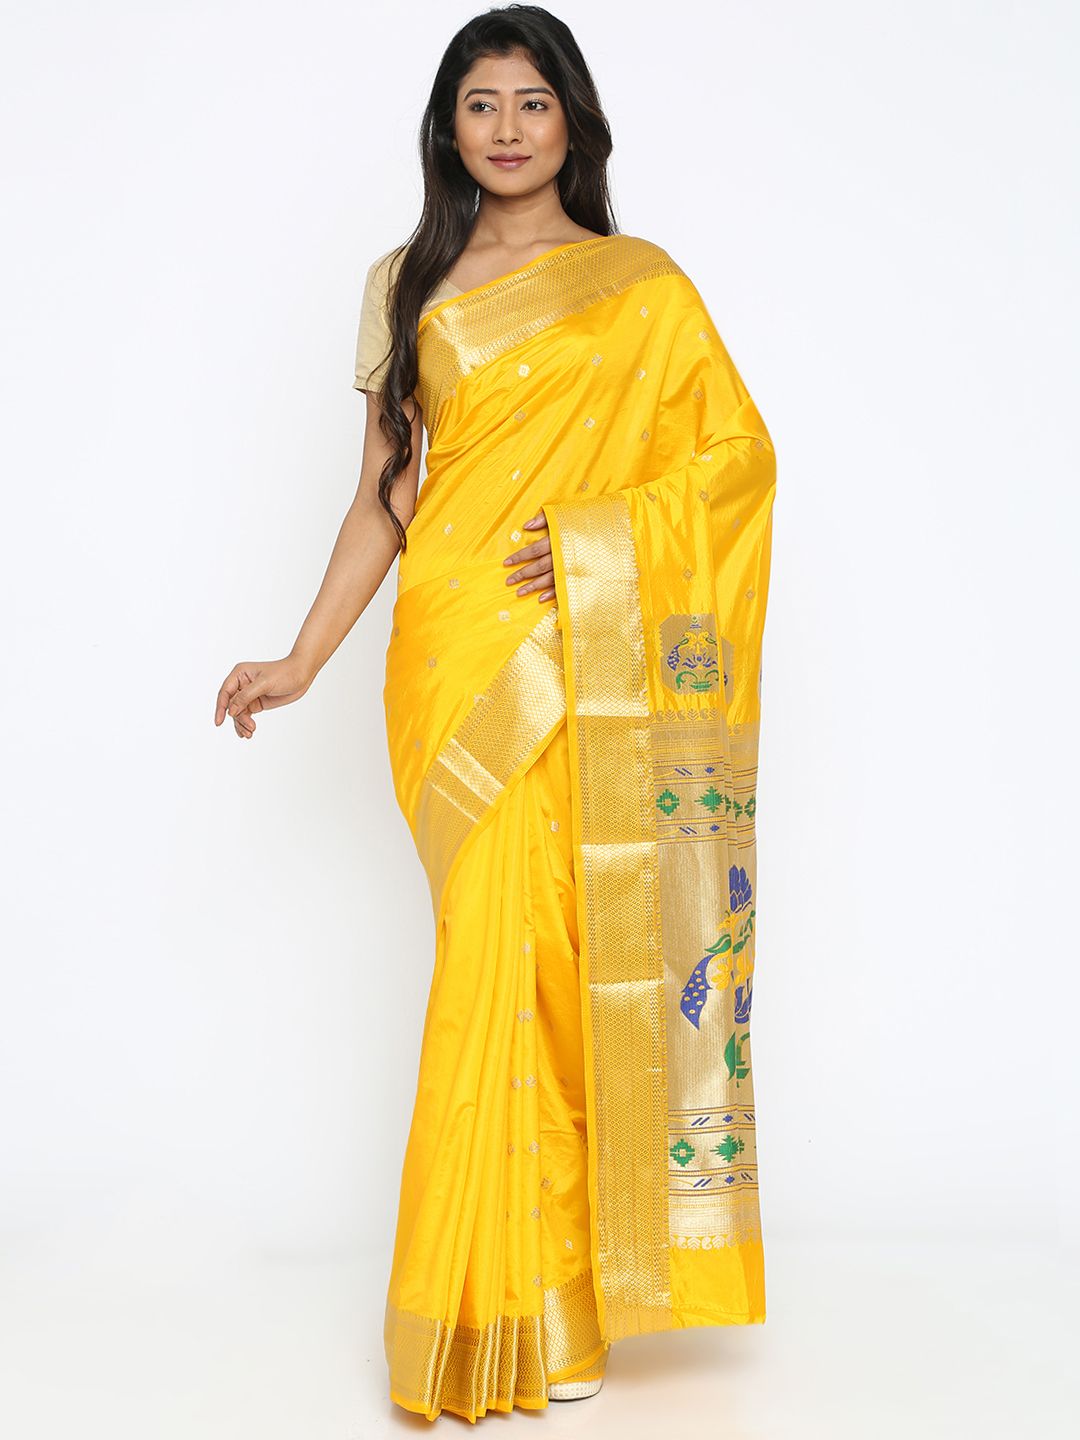 Varkala Silk Sarees Yellow Art Silk Paithani Traditional Saree Price in India